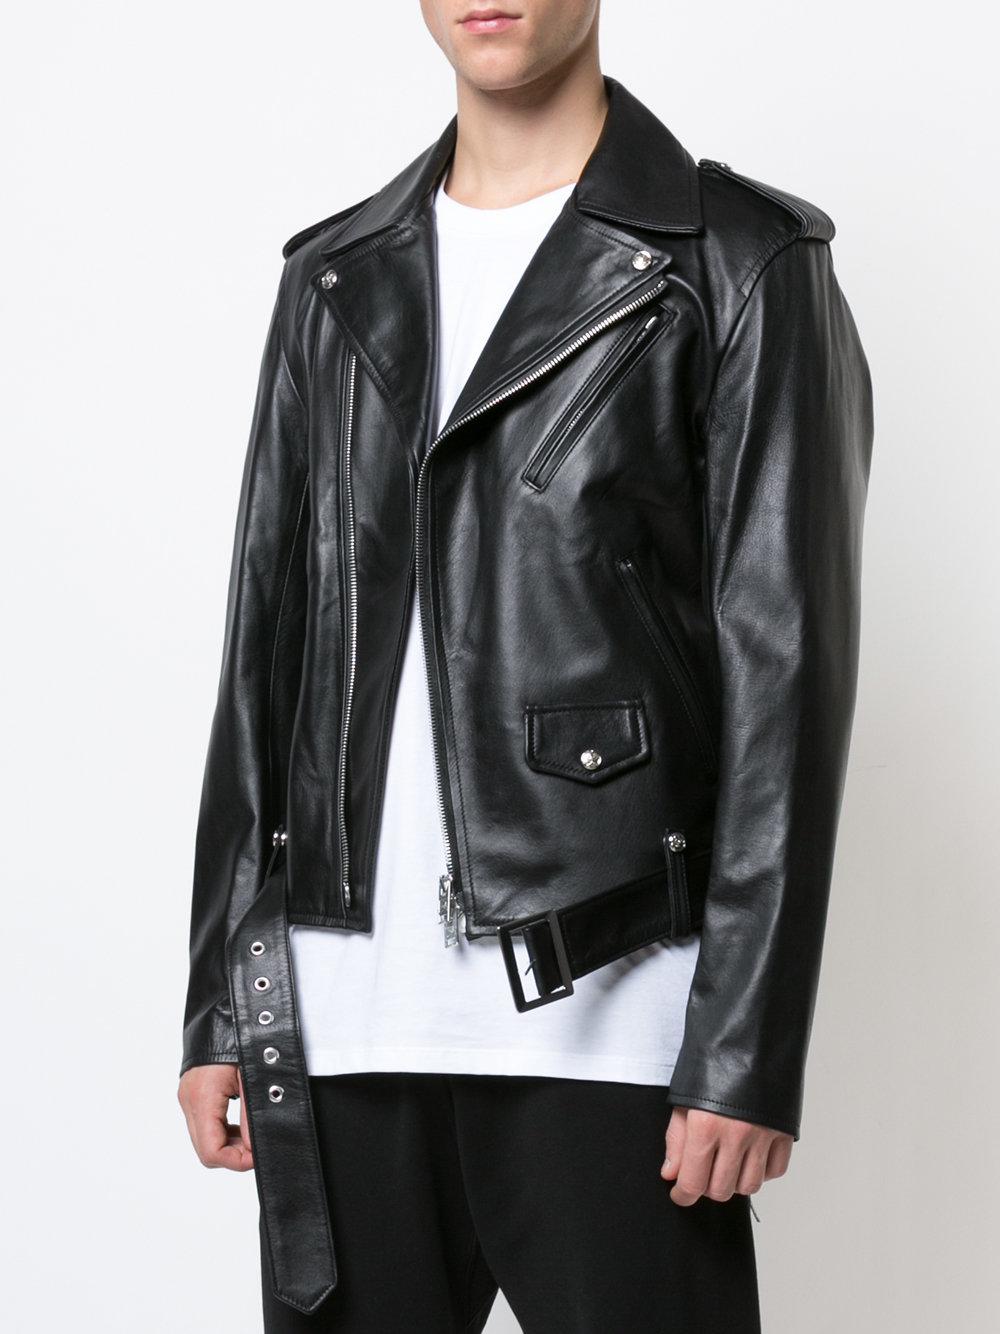 Mens Mastermind Motorcycle Style Leather Jacket Black, 5X-Large